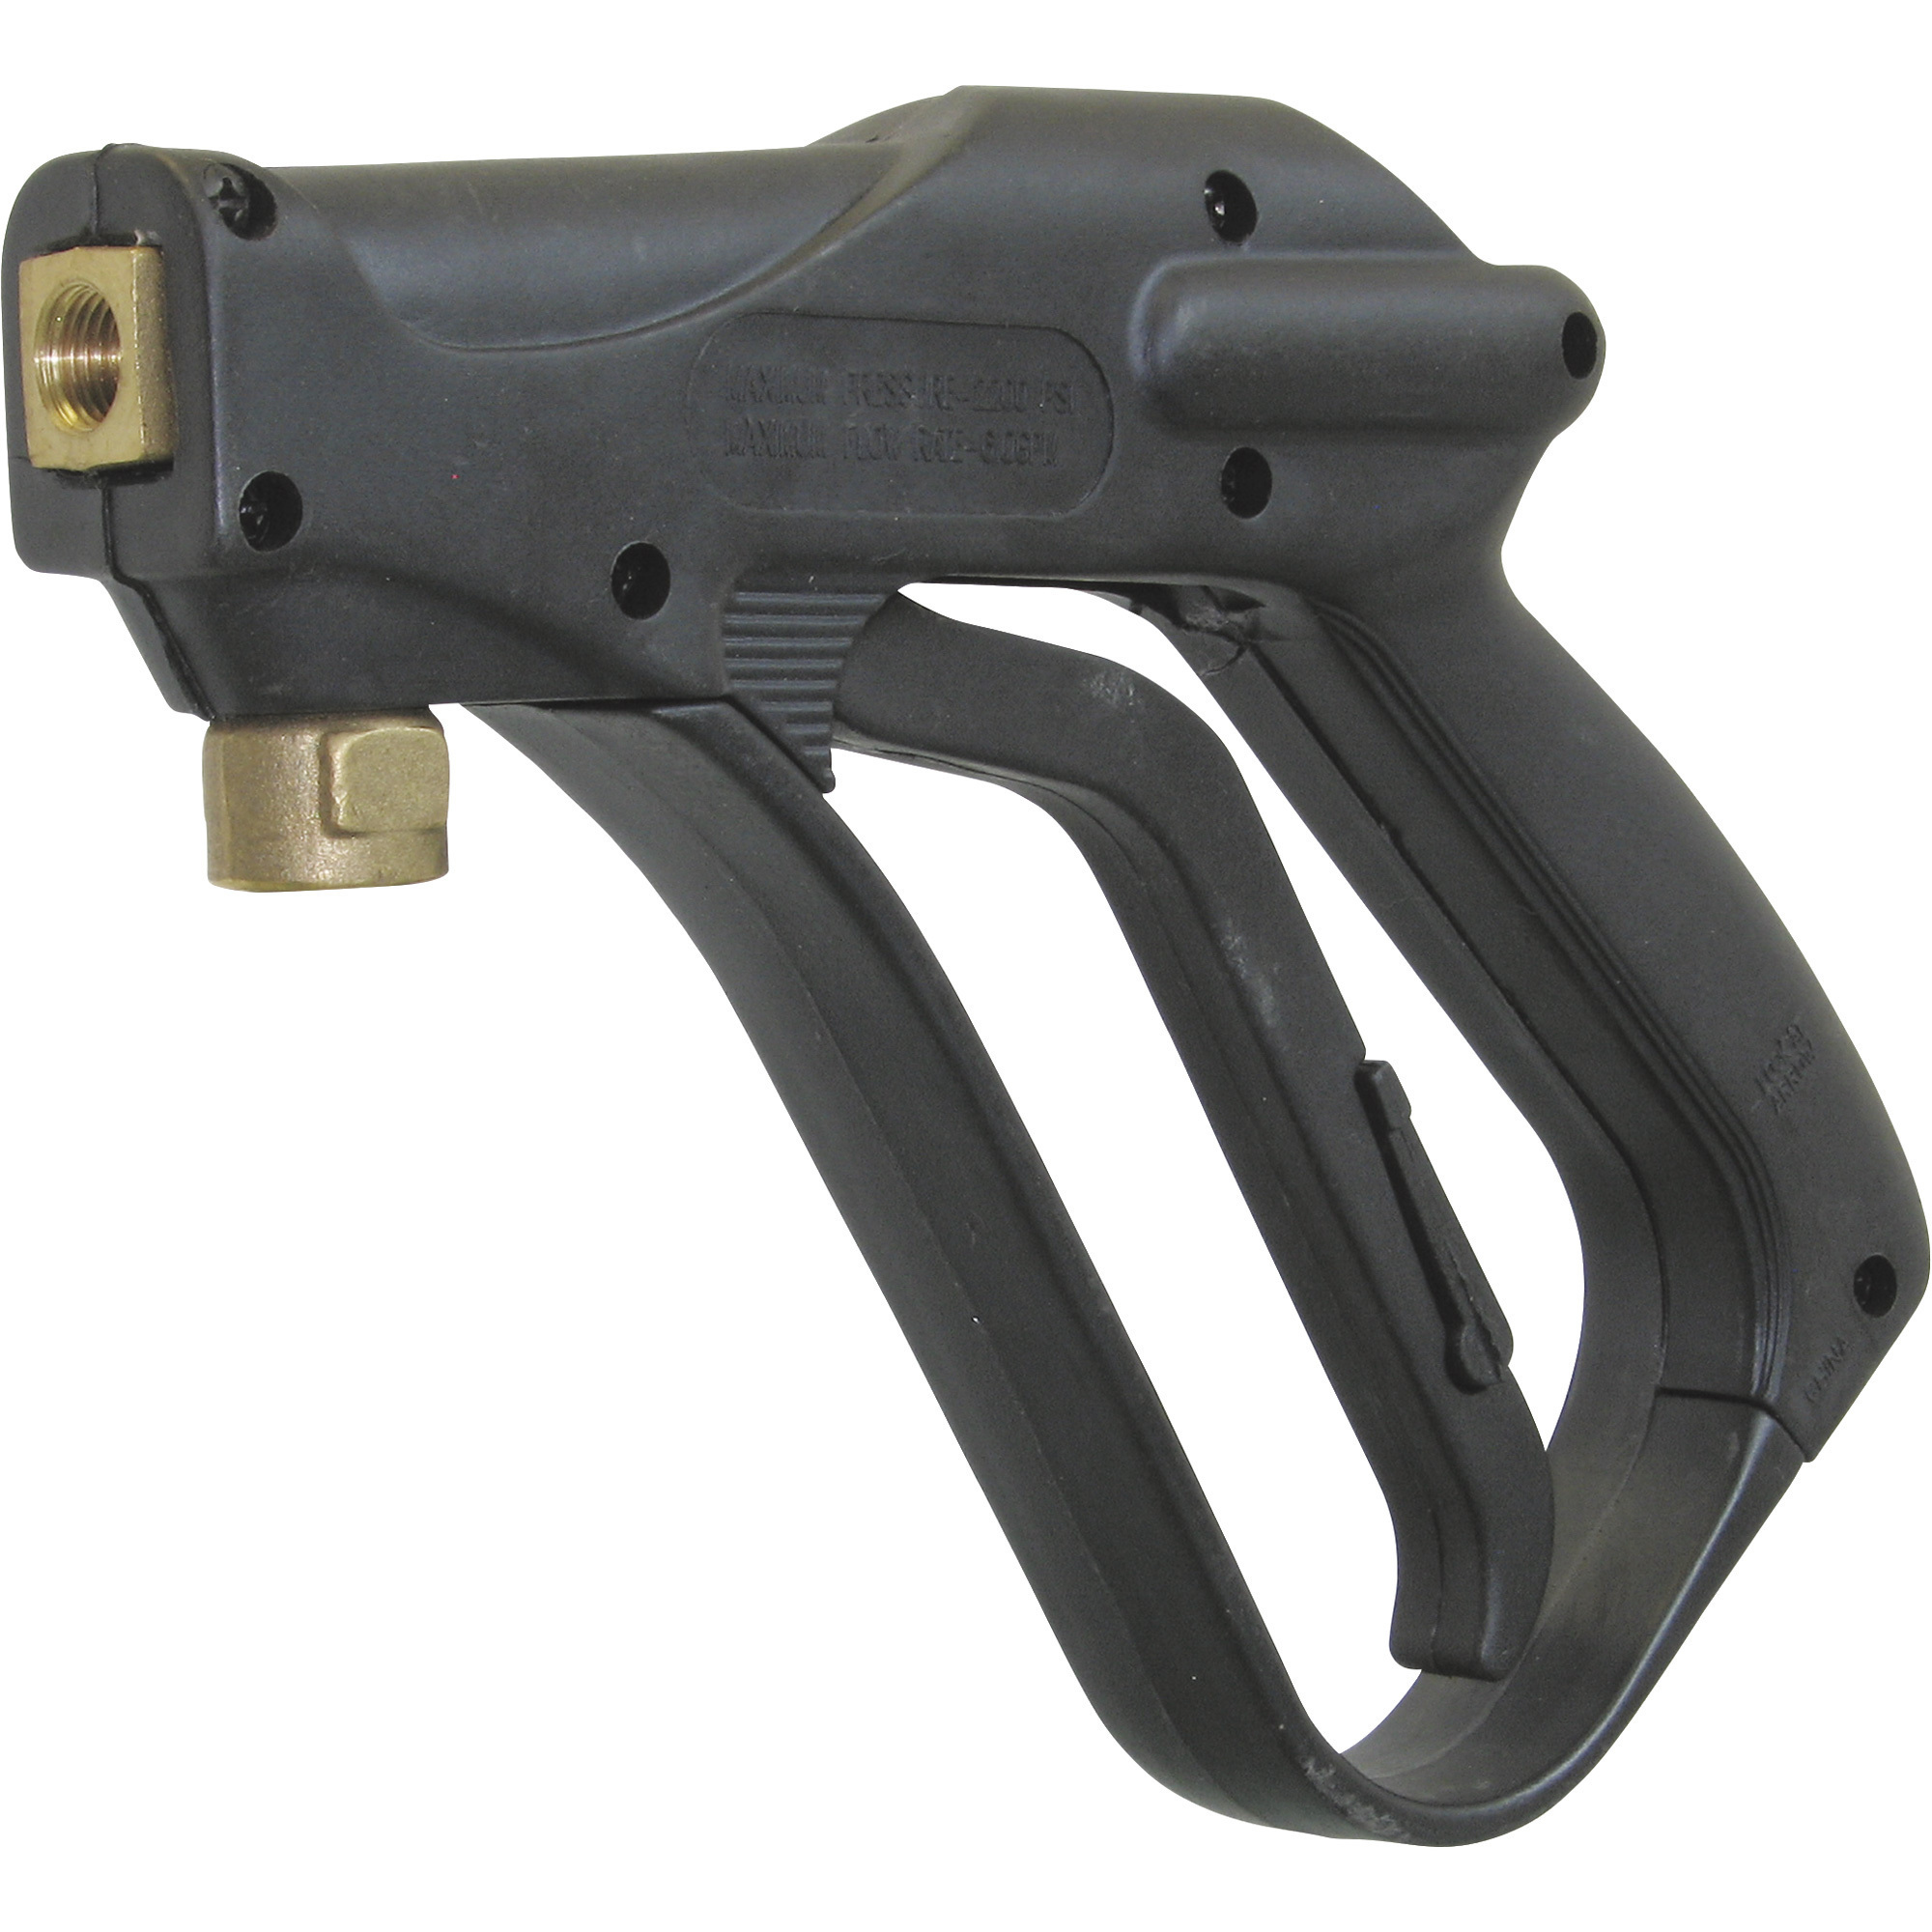 General Pump Pressure Washer Trigger Spray Gun â 2200 PSI, 6.0 GPM, Model DG2200P